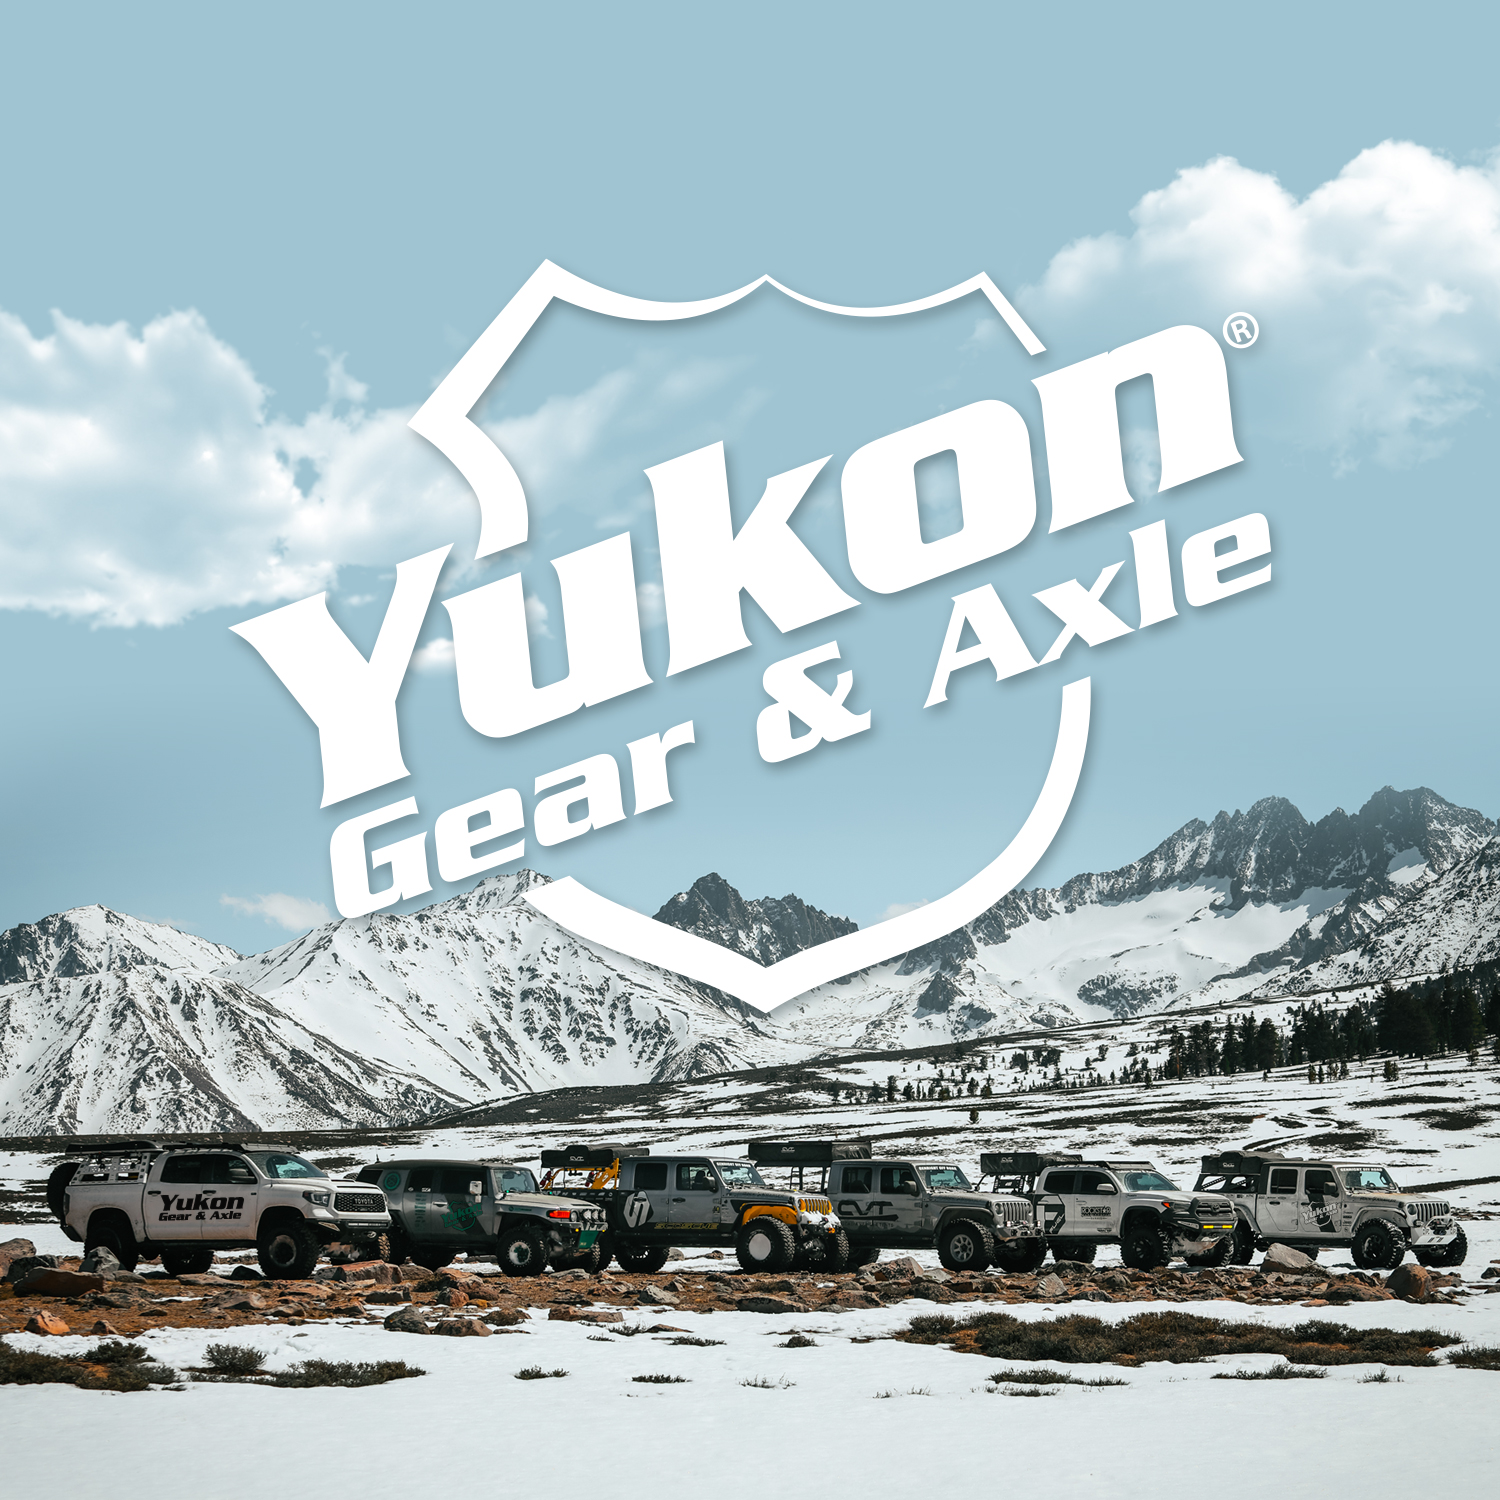 Yukon replacement LH or RH rear axle for JK (Non-Rubicon) Dana 44,30 spline 